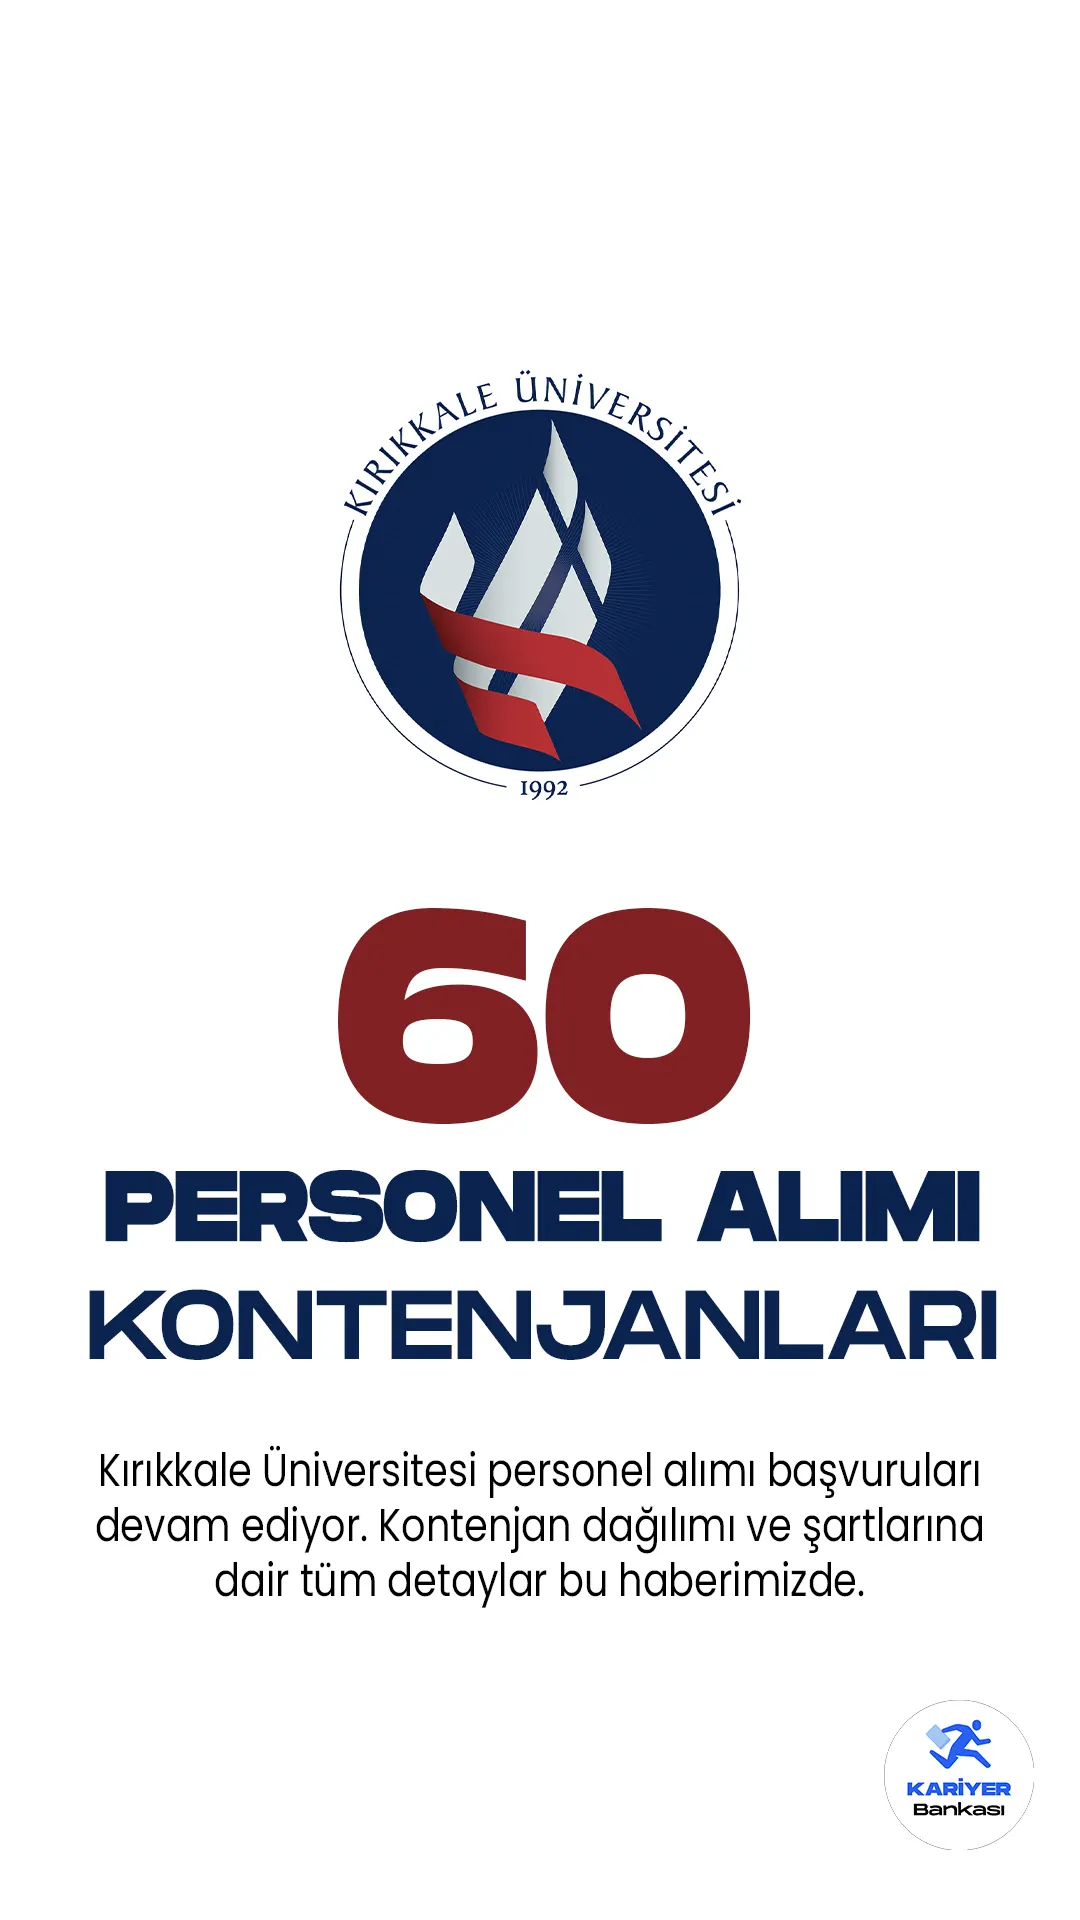 Kırıkkale Üniversitesi 60 personel alacak. Kontenjan dağılımı ve şartlarına dair tüm detaylar bu haberimizde.